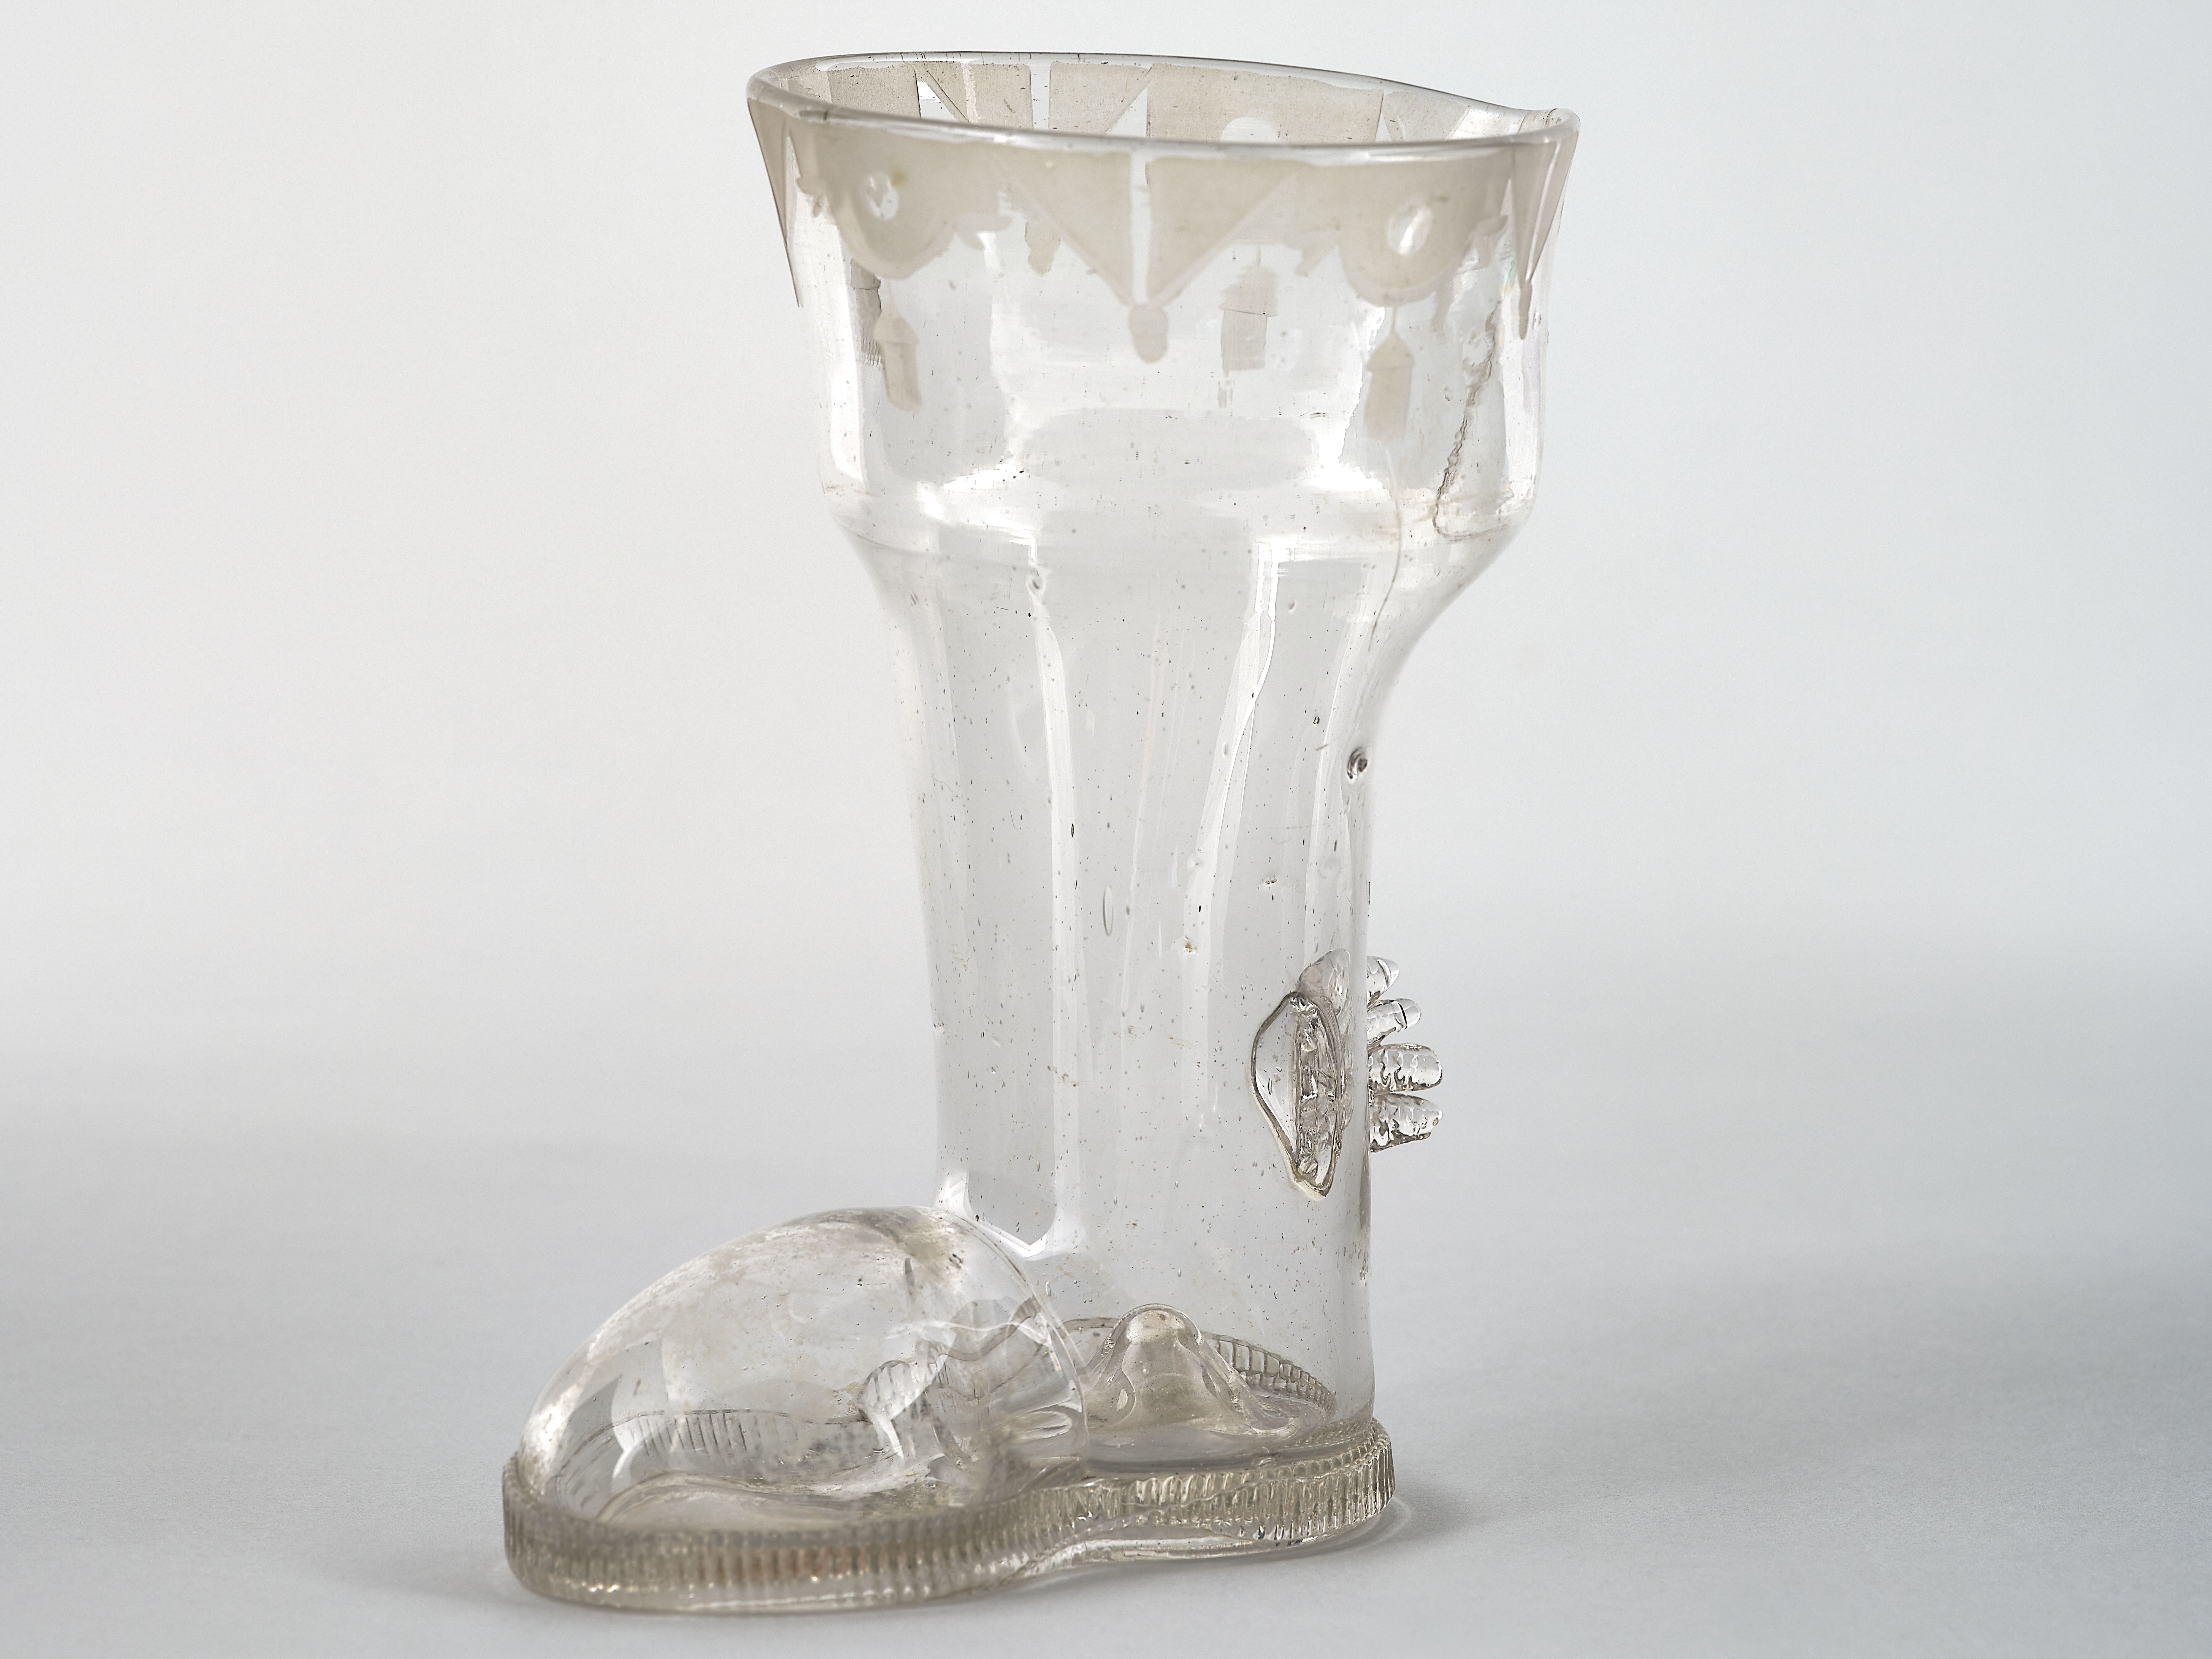 Scherzglas in Form eines Stiefels aus dem 18. Jahrhundert